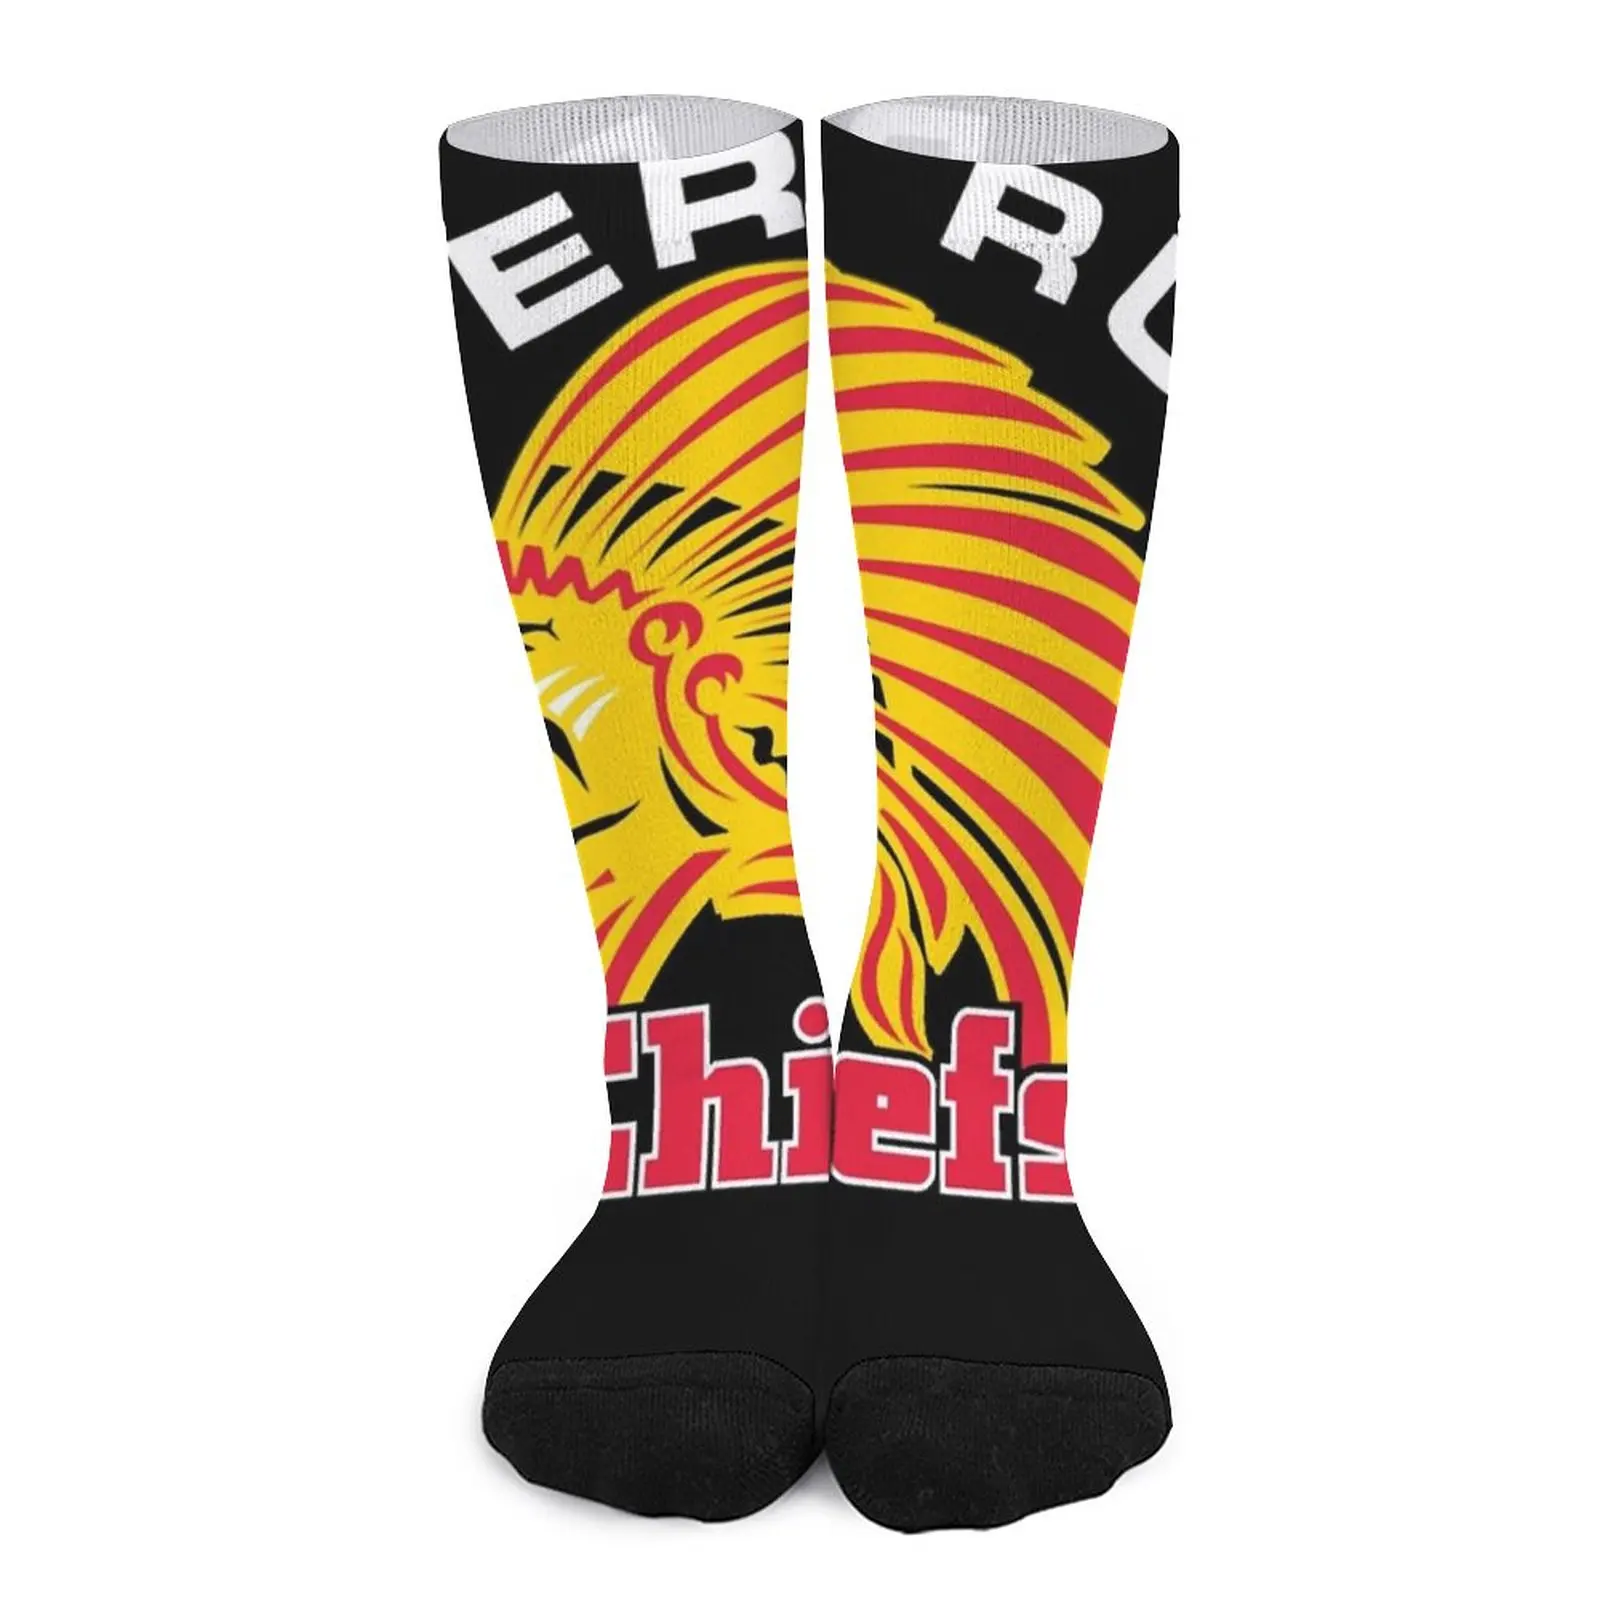 Exeter Chiefs Socks Women's socks socks for man Run Women's short socks